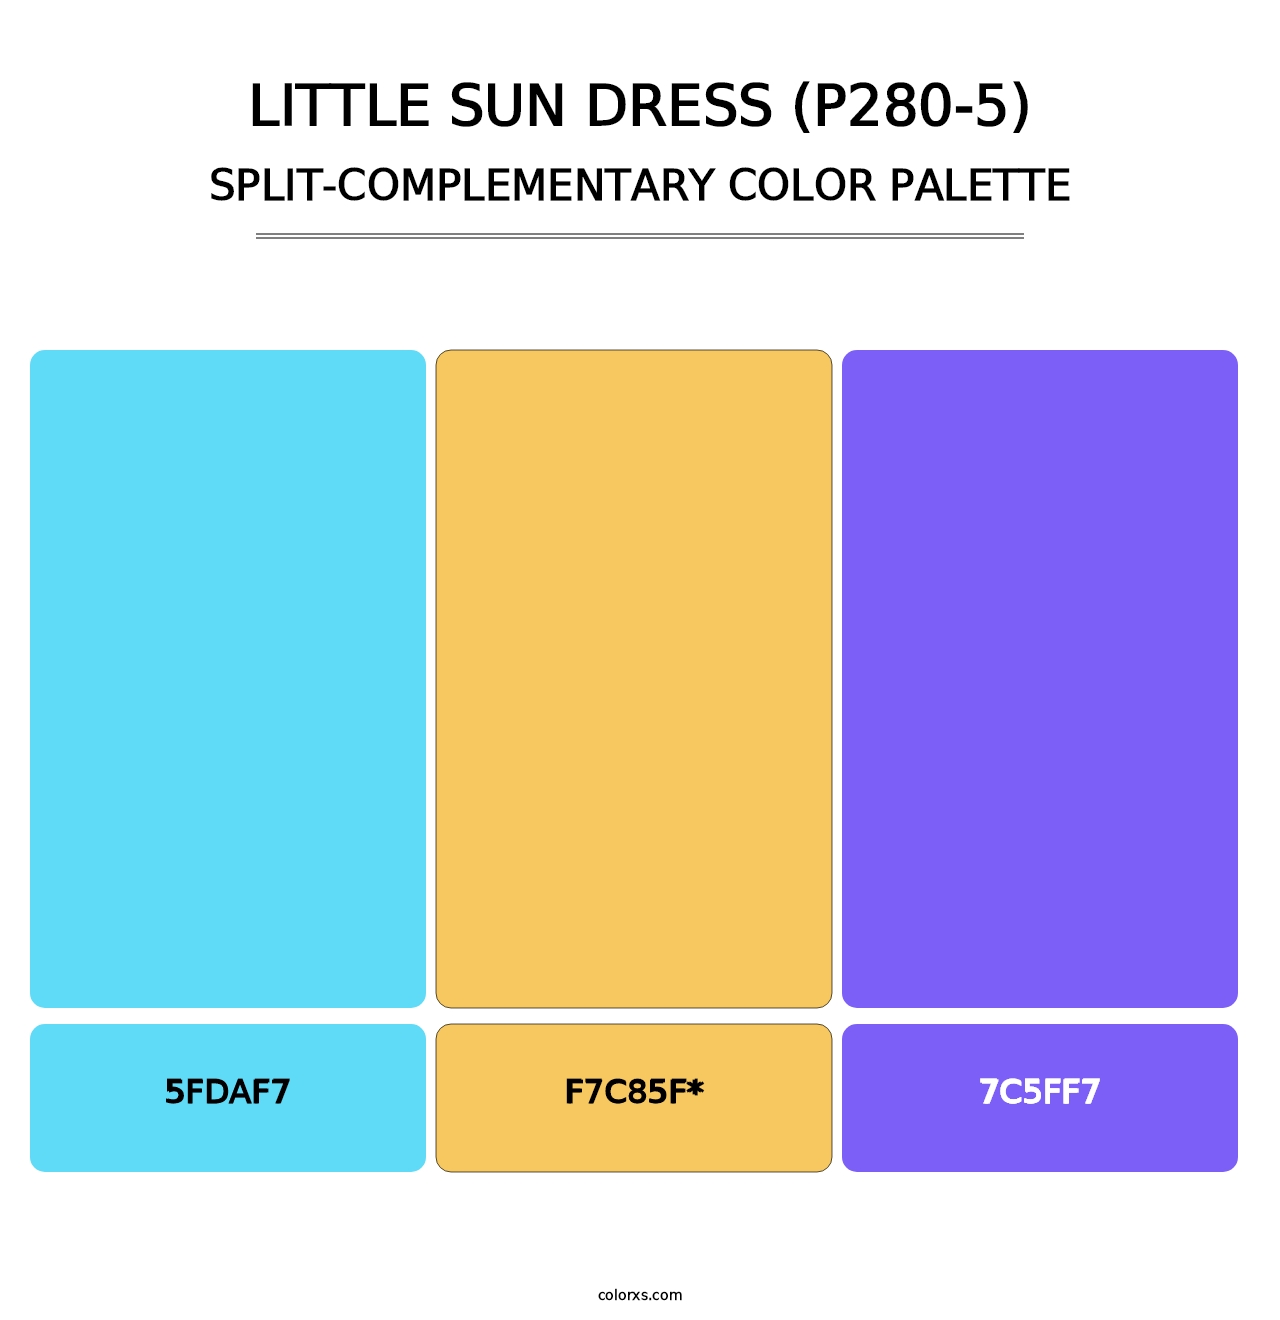 Little Sun Dress (P280-5) - Split-Complementary Color Palette